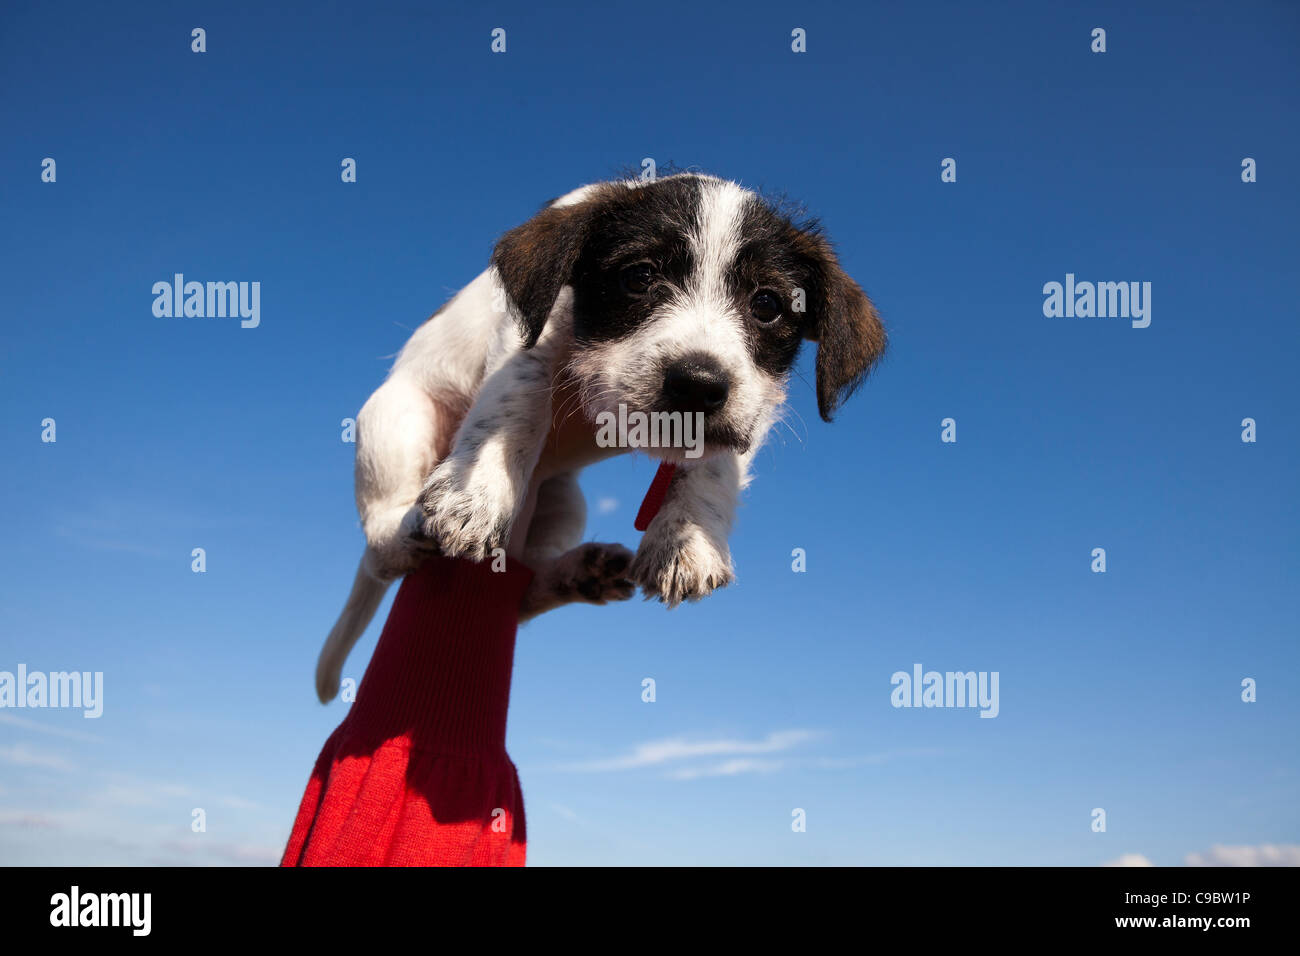 niedlichen Welpen Hund hielt bis in die Luft. Hund ist eine Kreuzung zwischen einem Jack Russell und ein Bichon Frise Stockfoto